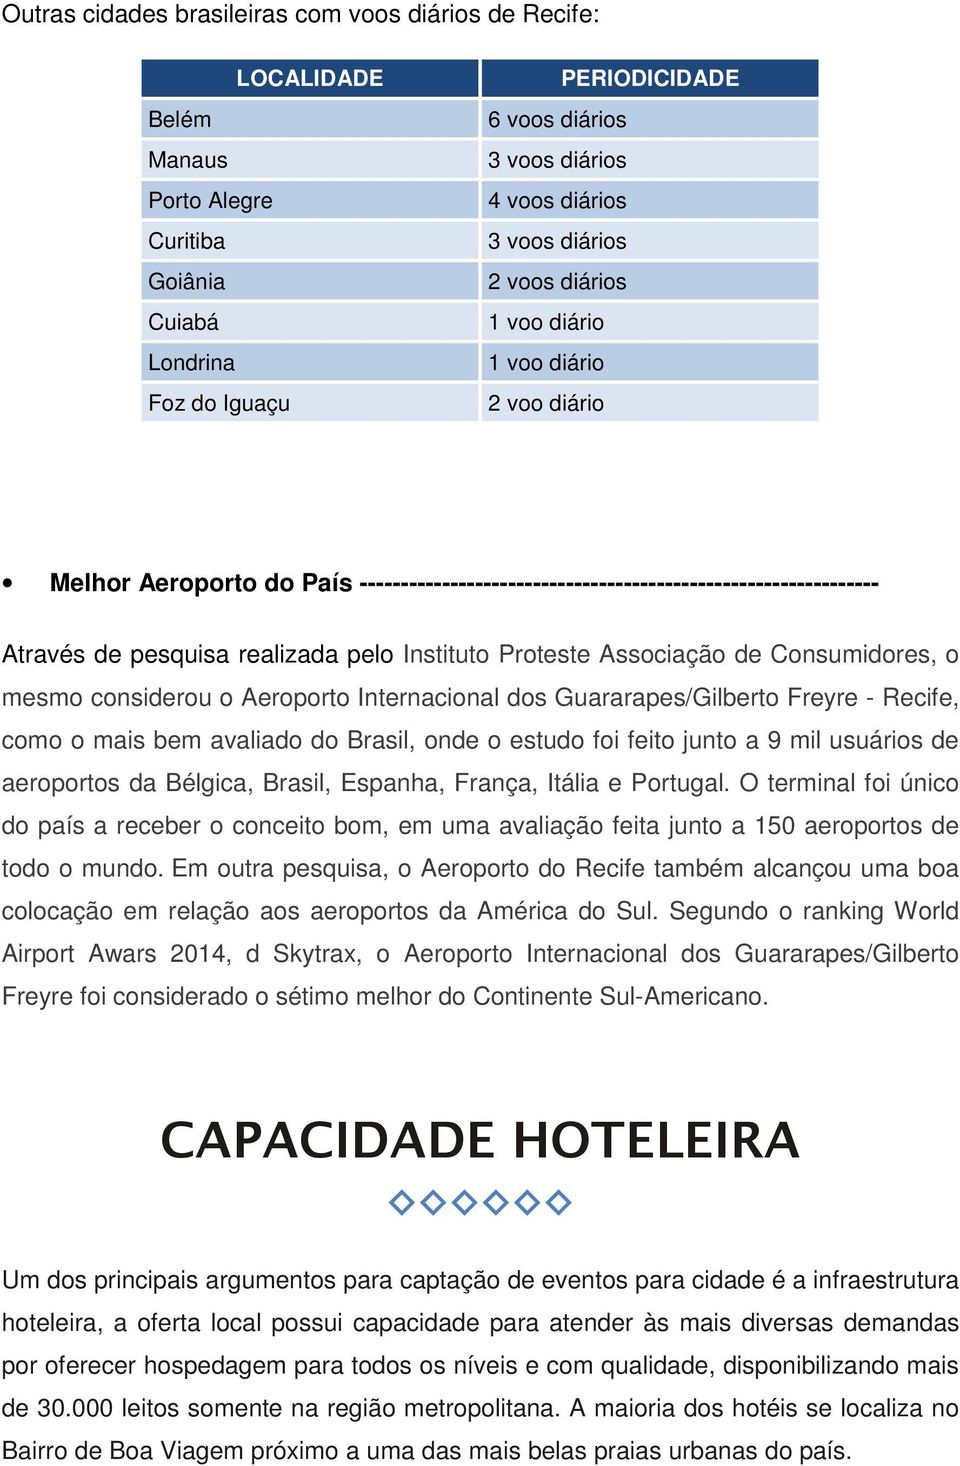 Instituto Proteste Associação de Consumidores, o mesmo considerou o Aeroporto Internacional dos Guararapes/Gilberto Freyre - Recife, como o mais bem avaliado do Brasil, onde o estudo foi feito junto